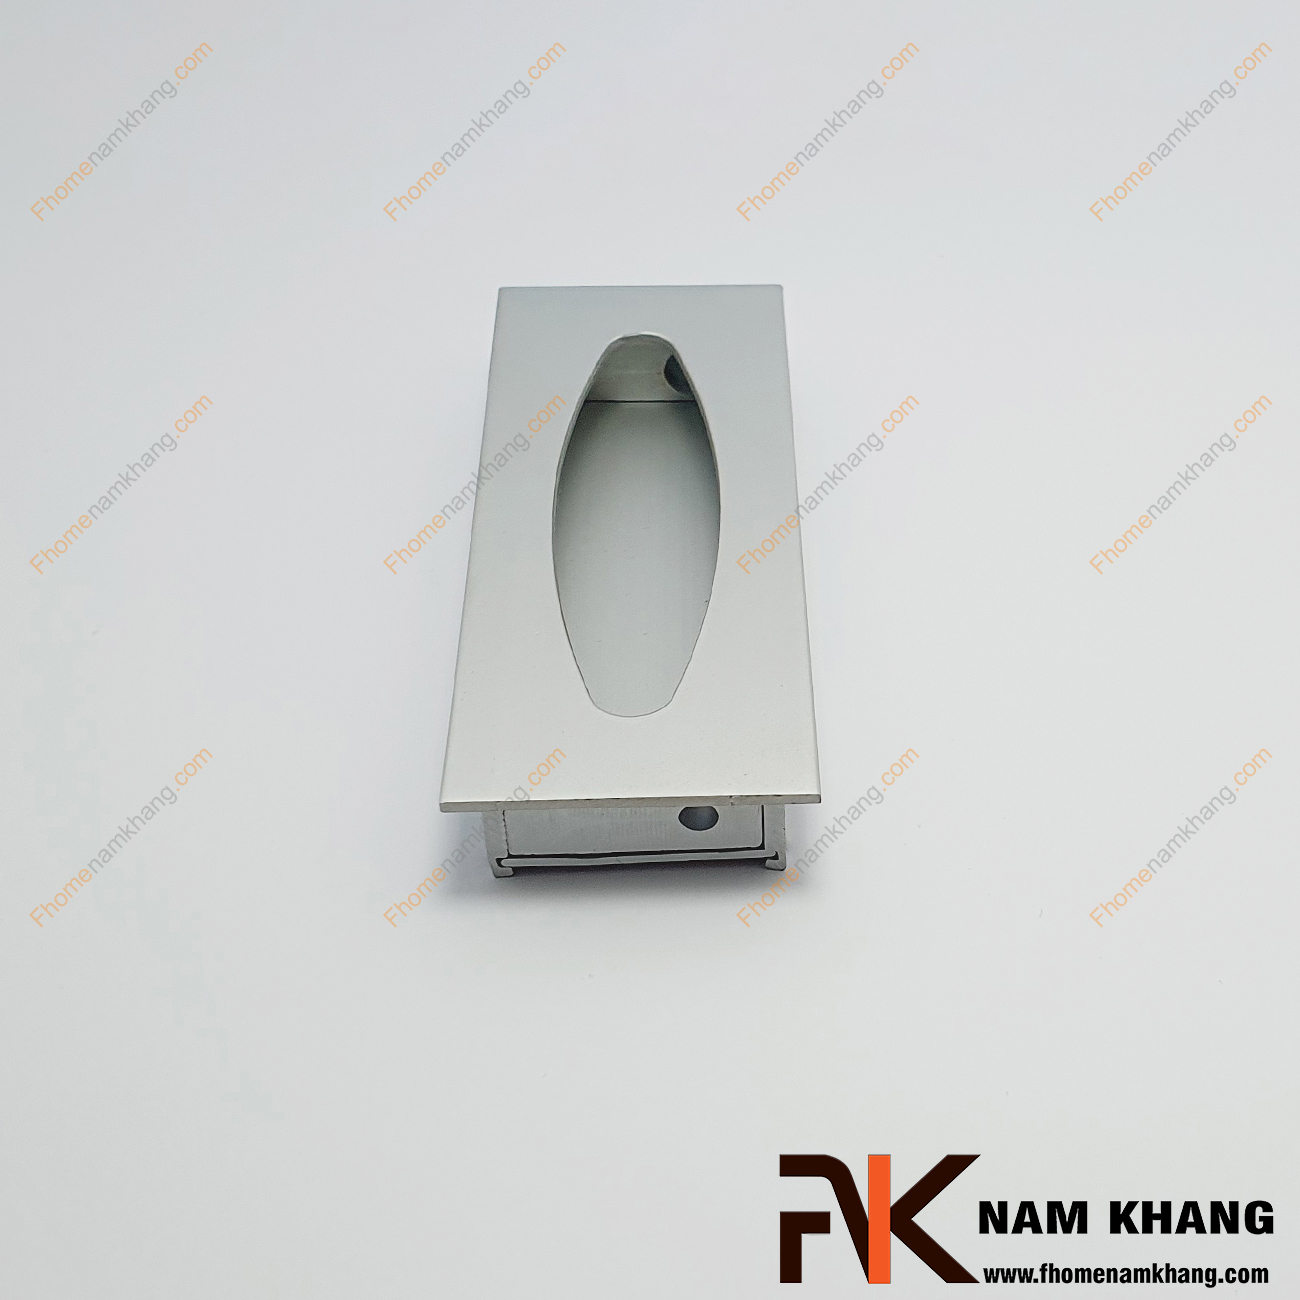 Tay nắm âm tủ màu nhôm NK012-NE là loại tay nắm chuyên dùng cho các loại tủ đặt ở những nơi có không gian hạn chế hoặc dùng để nâng cao tính thẫm mỹ của sản phẩm.